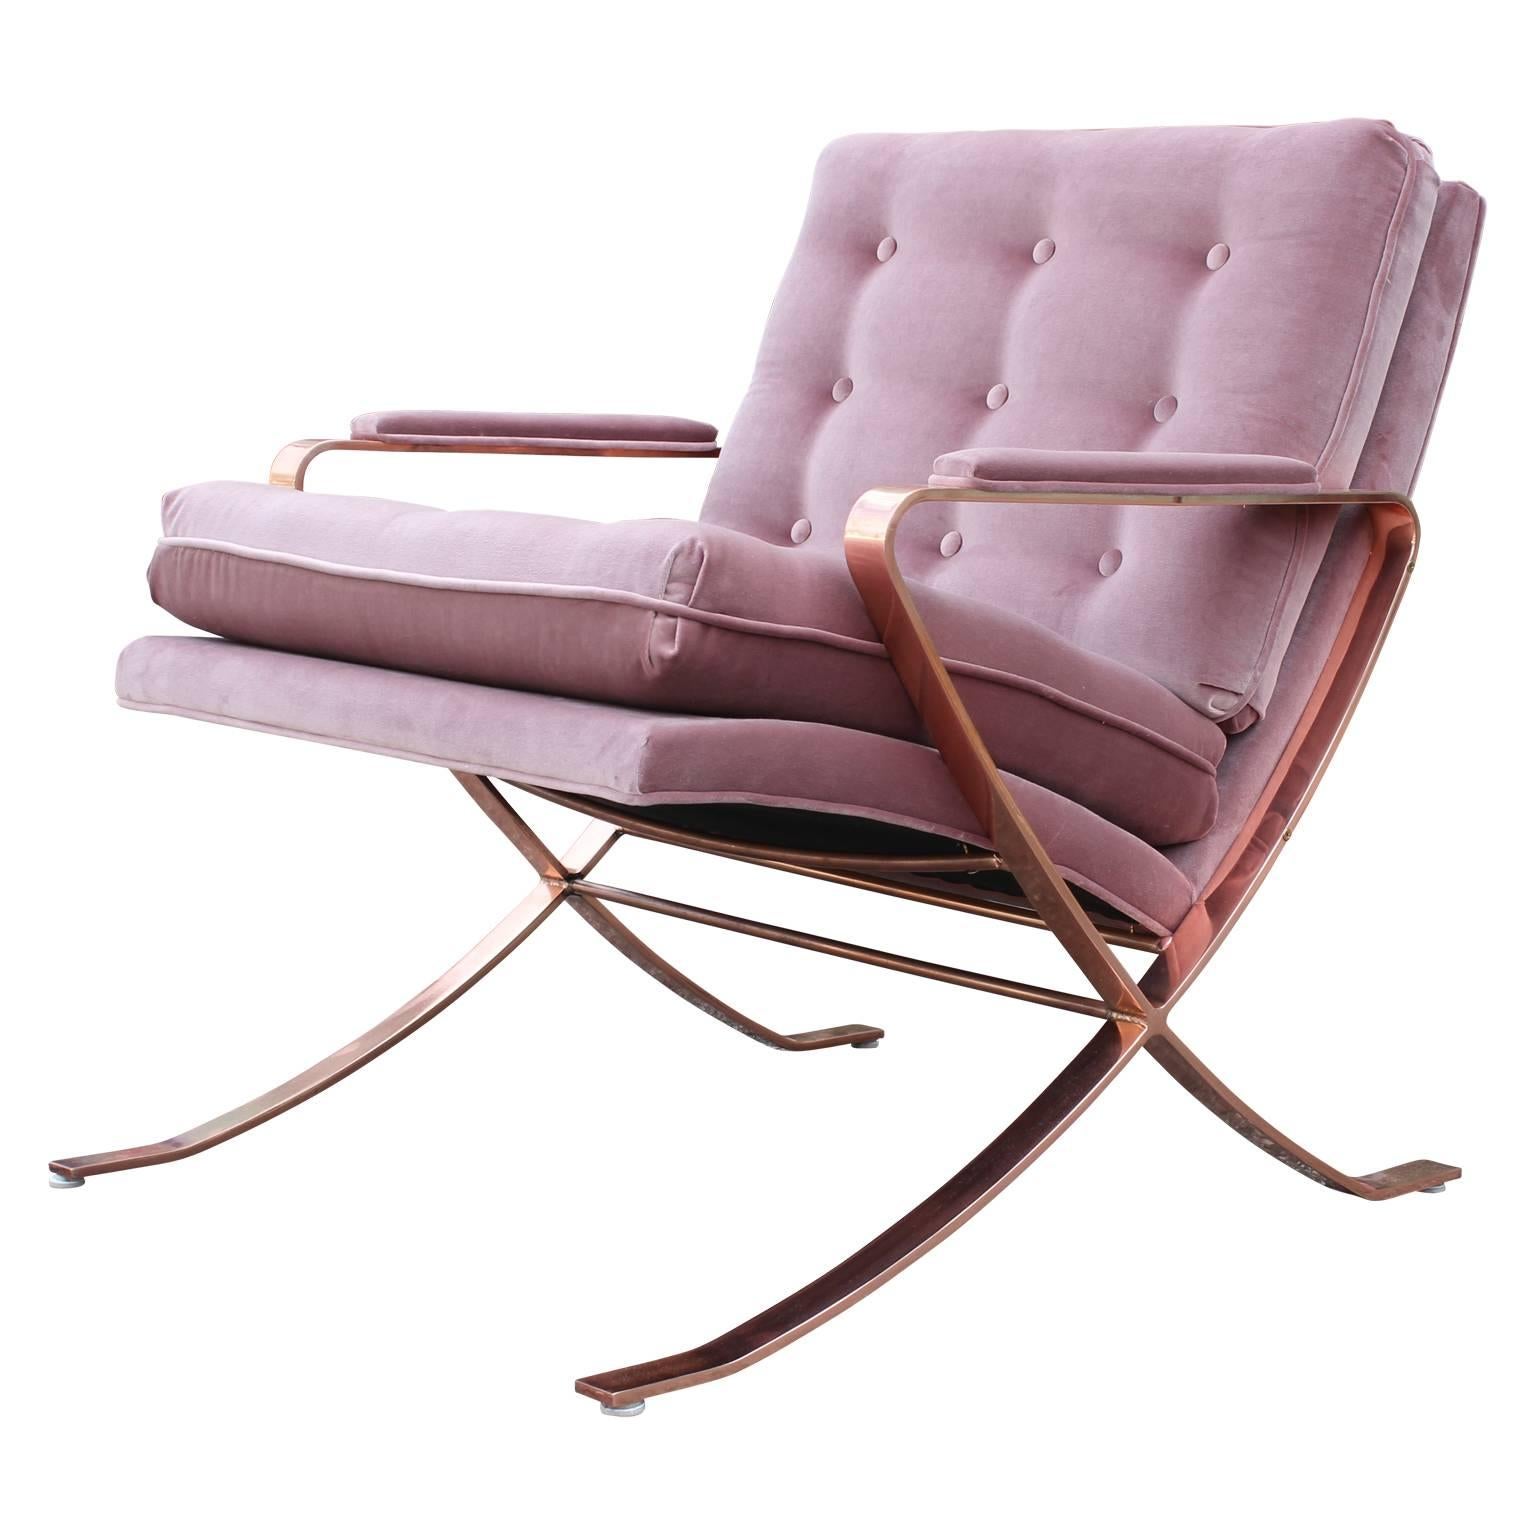 Pair of modern Italian copper-plated lounge chairs in tufted Mauve Kravet velvet.